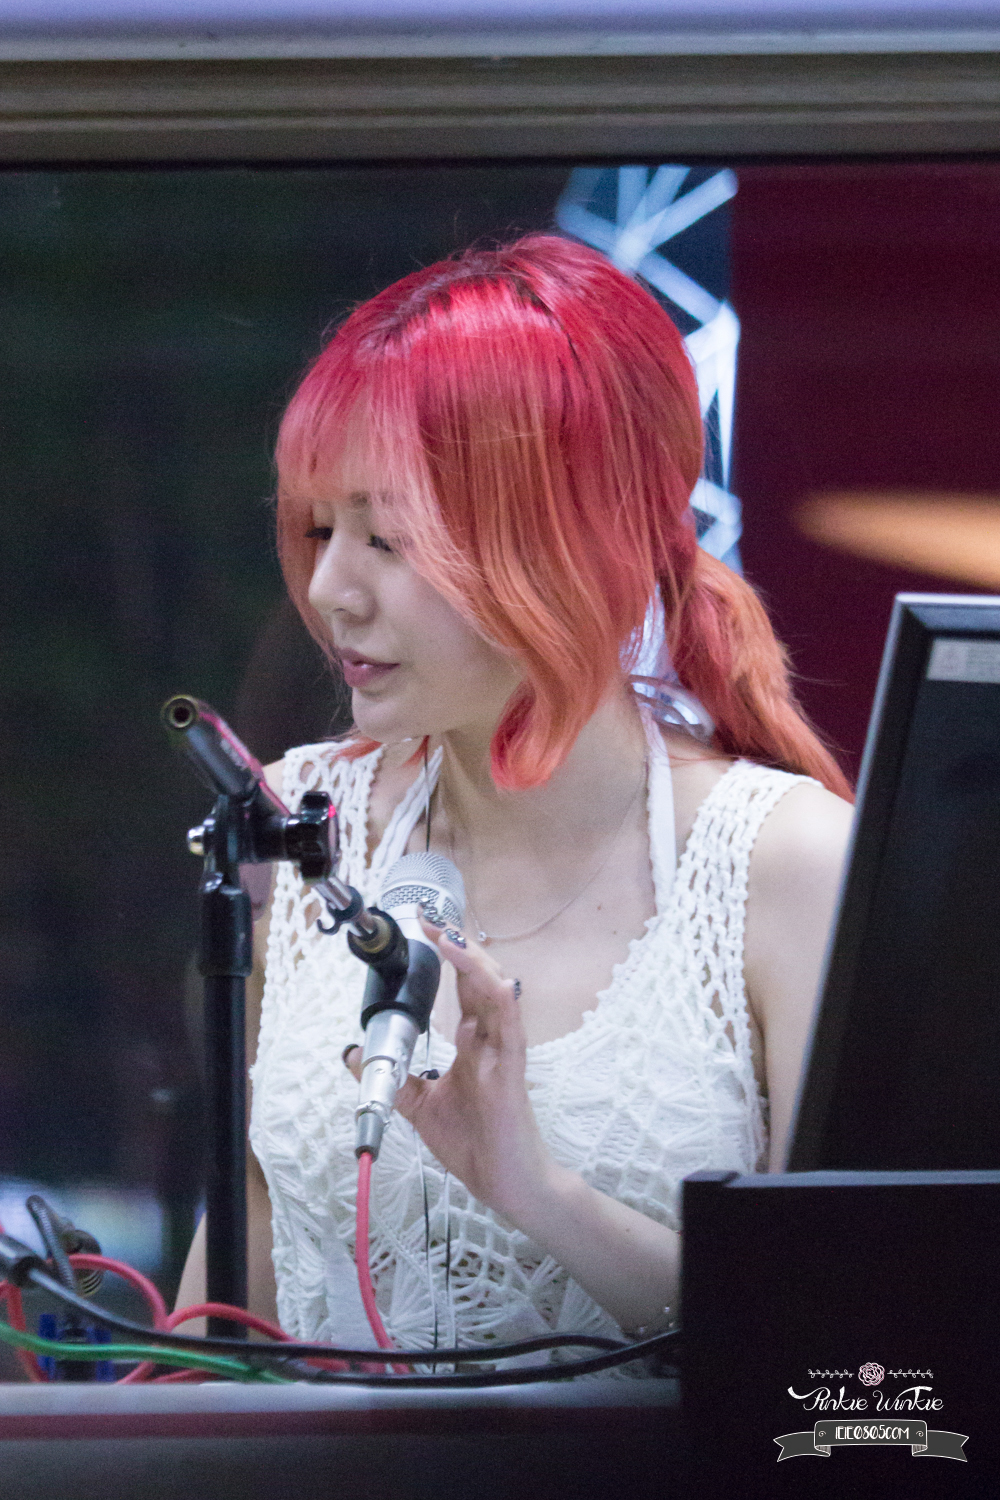 [OTHER][06-02-2015]Hình ảnh mới nhất từ DJ Sunny tại Radio MBC FM4U - "FM Date" - Page 32 29058302726_6b0f409c03_o